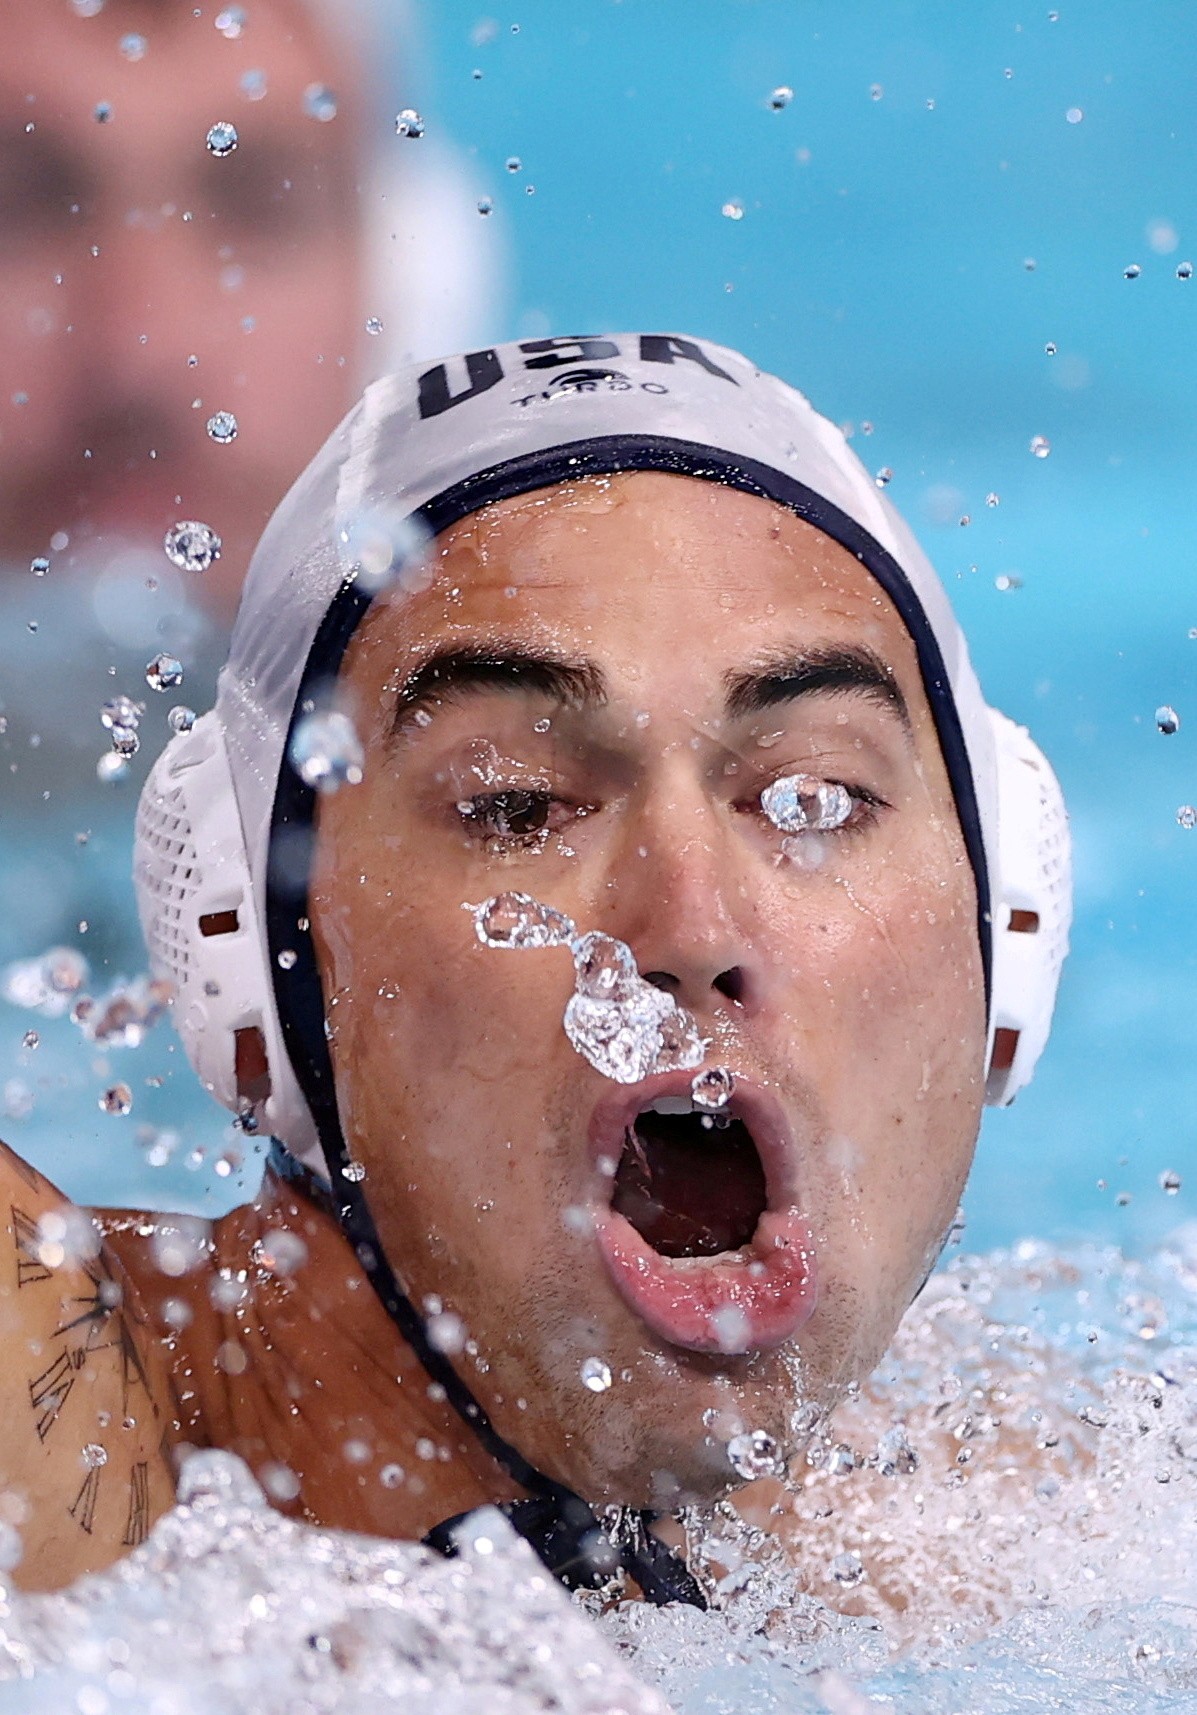 Atleta de polo aquático dos EUA é fotografado no momento que uma gota d'água passa exatamente pelo o olho esquerdoREUTERS